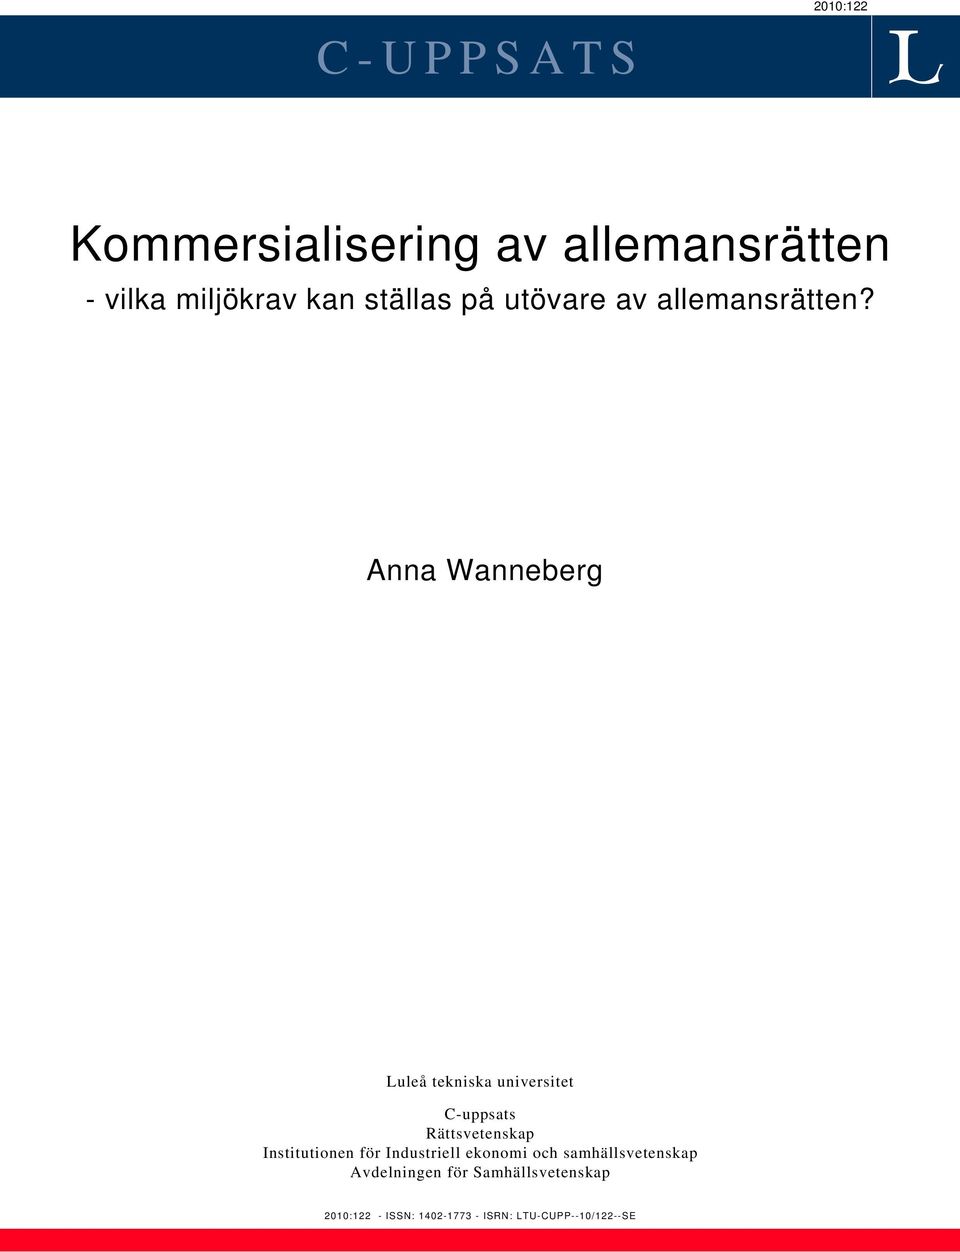 Anna Wanneberg Luleå tekniska universitet C-uppsats Rättsvetenskap Institutionen